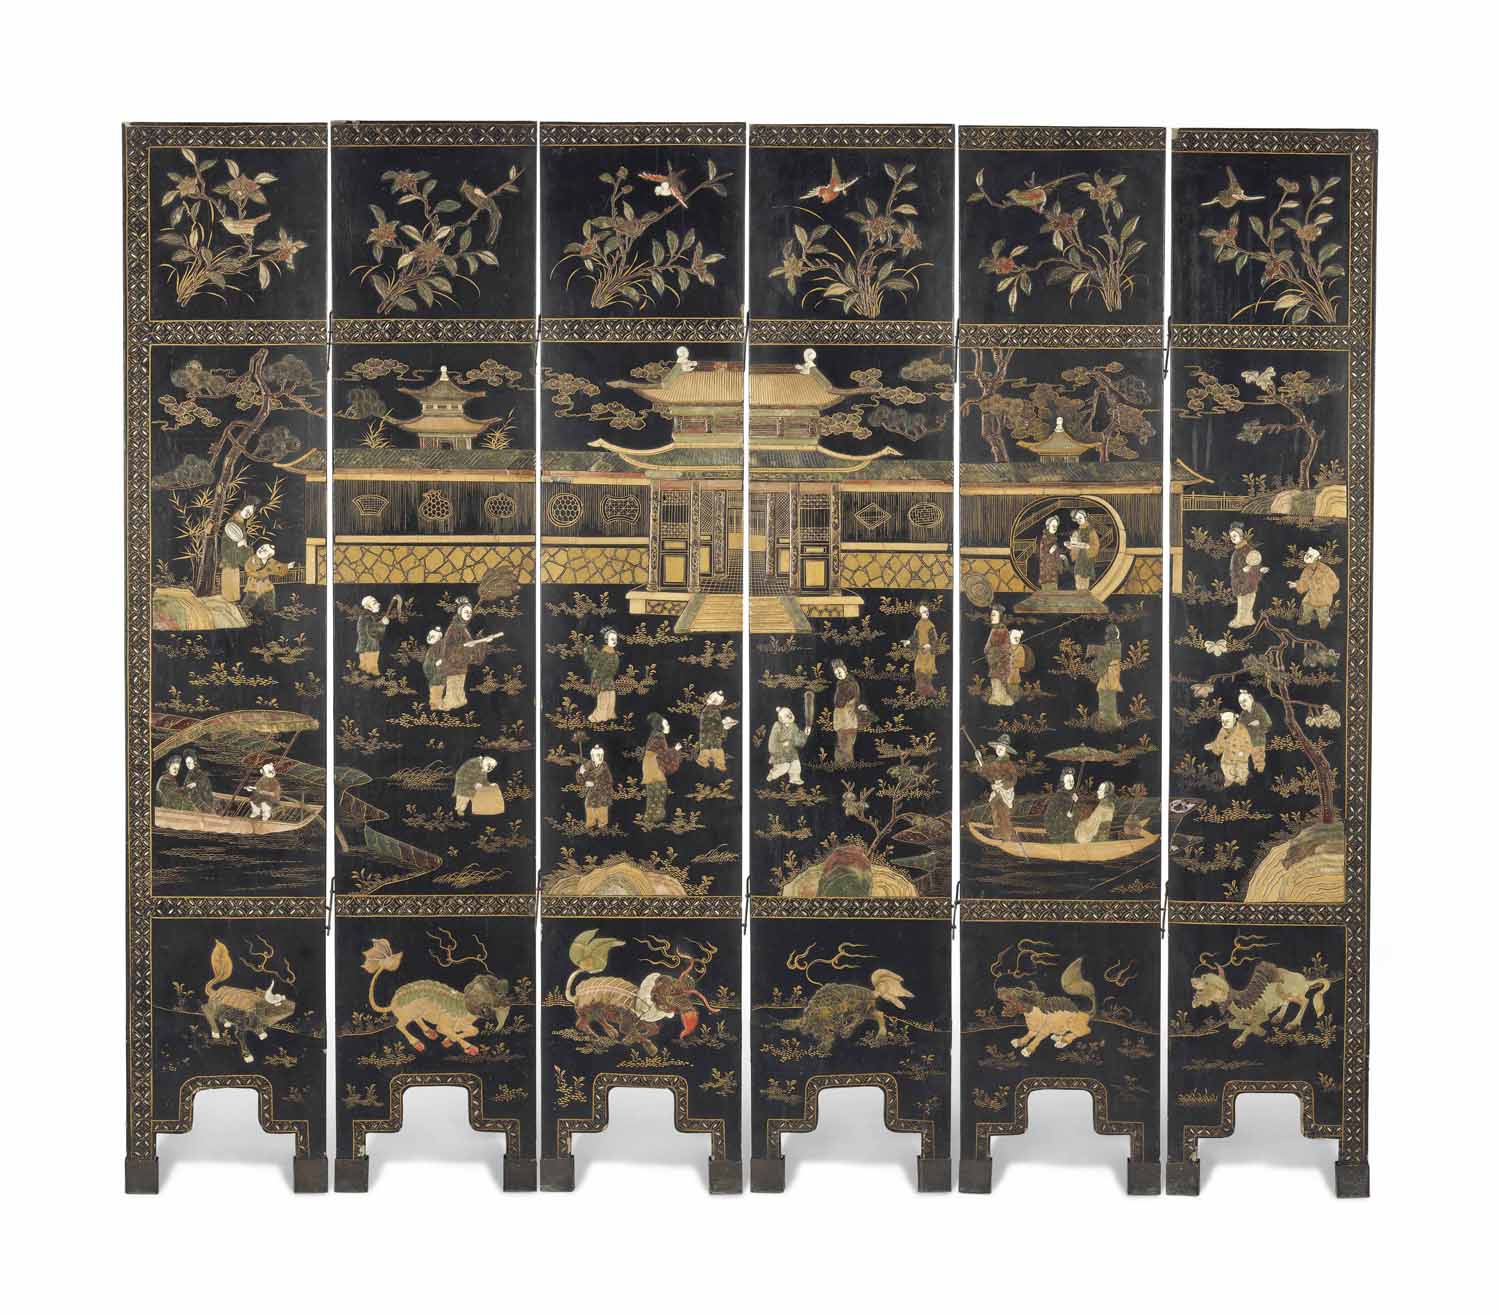 佳士得 拍卖 10416 中国陶瓷、工艺精品与纺织品 伦敦南肯辛顿|2015年5月12日 拍品141 A HARDSTONE-INLAID LACQUER SCREEN 19TH CENTURY